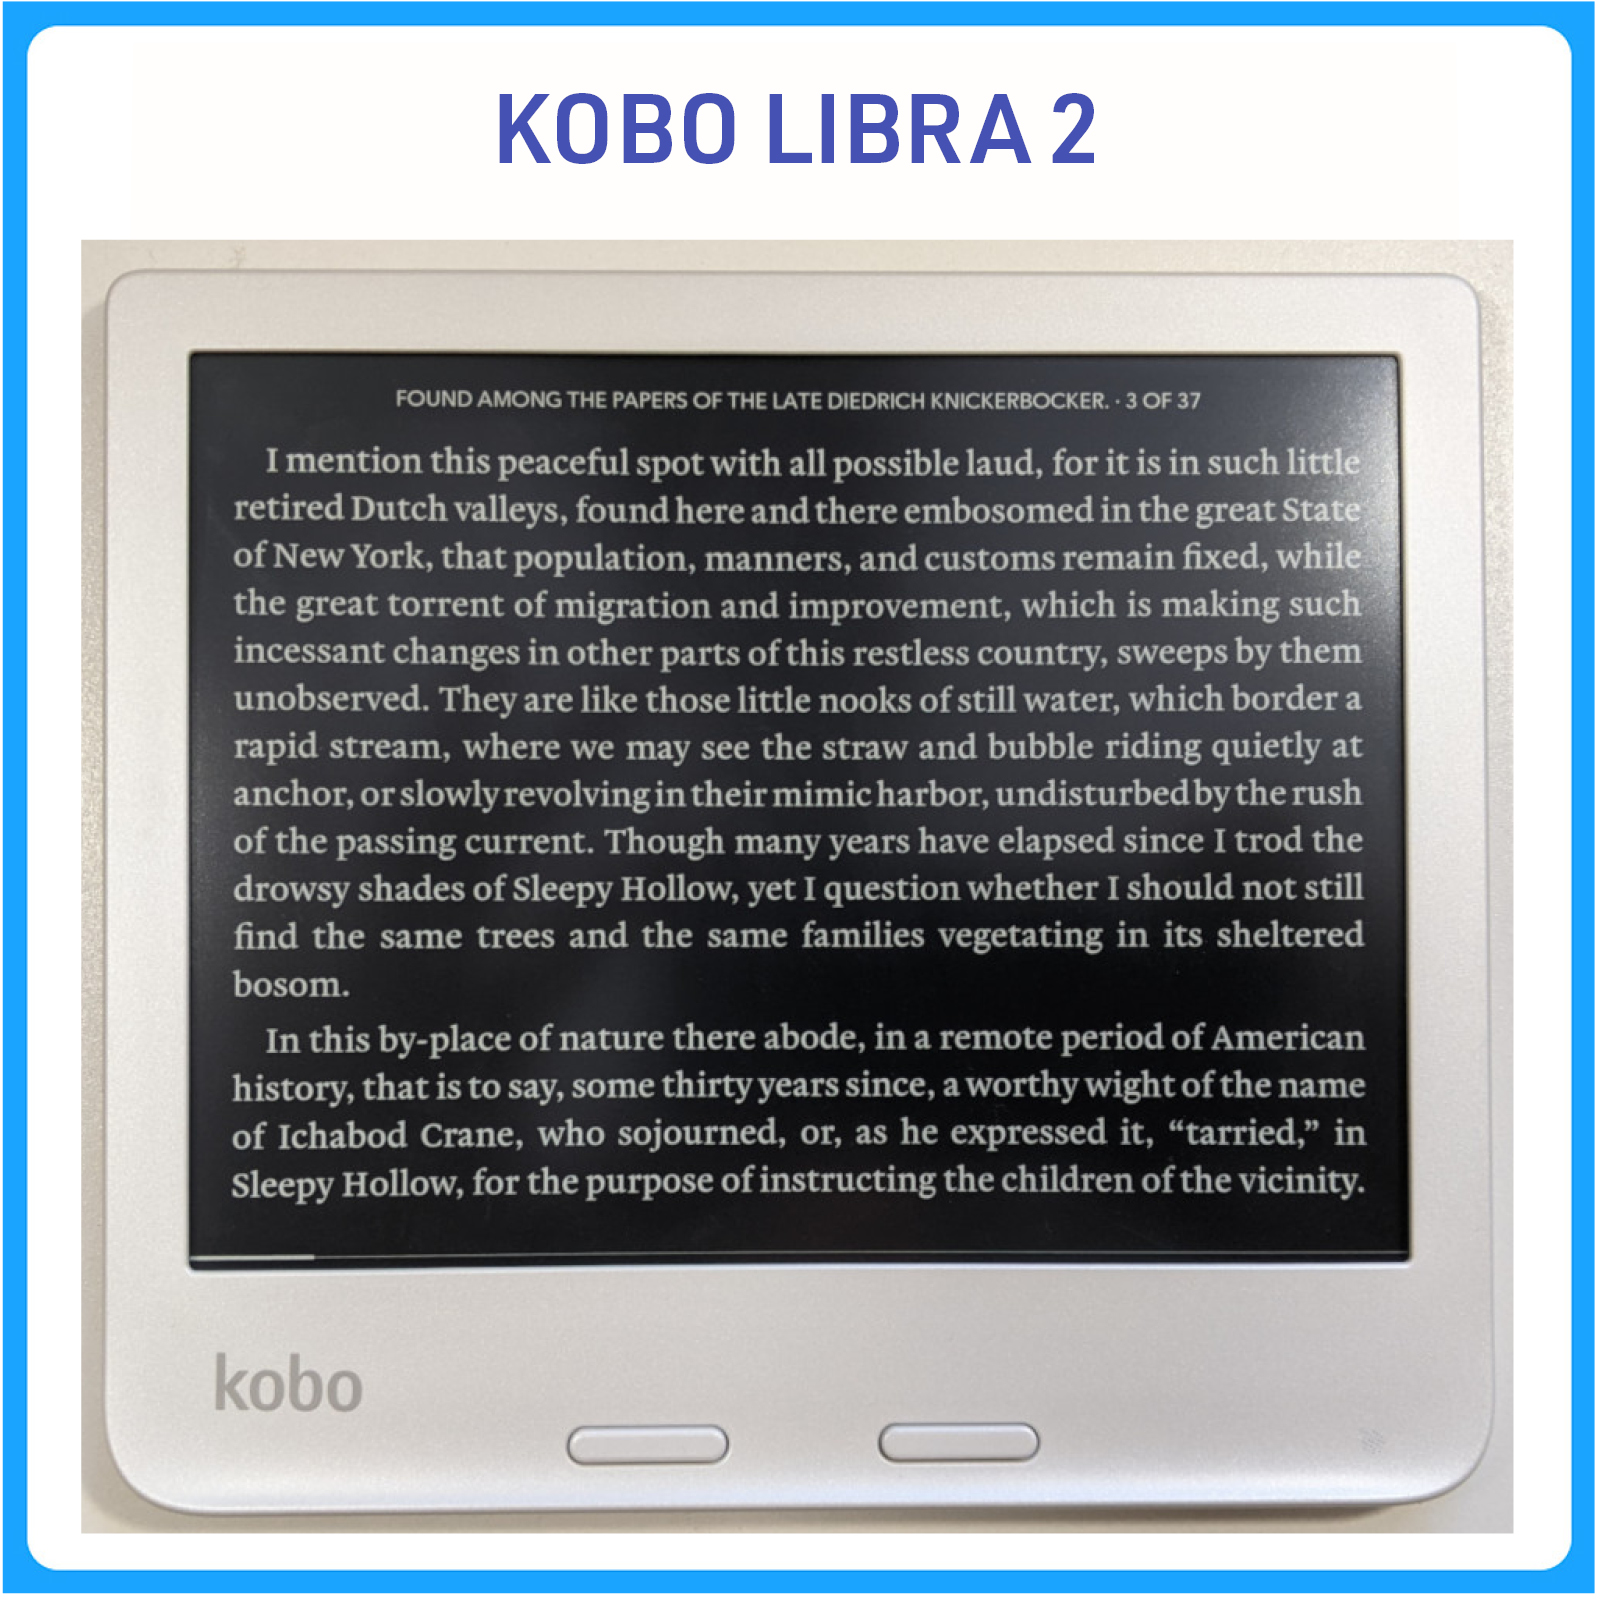 Máy đọc sách Kobo Libra 2 - hàng nhập khẩu